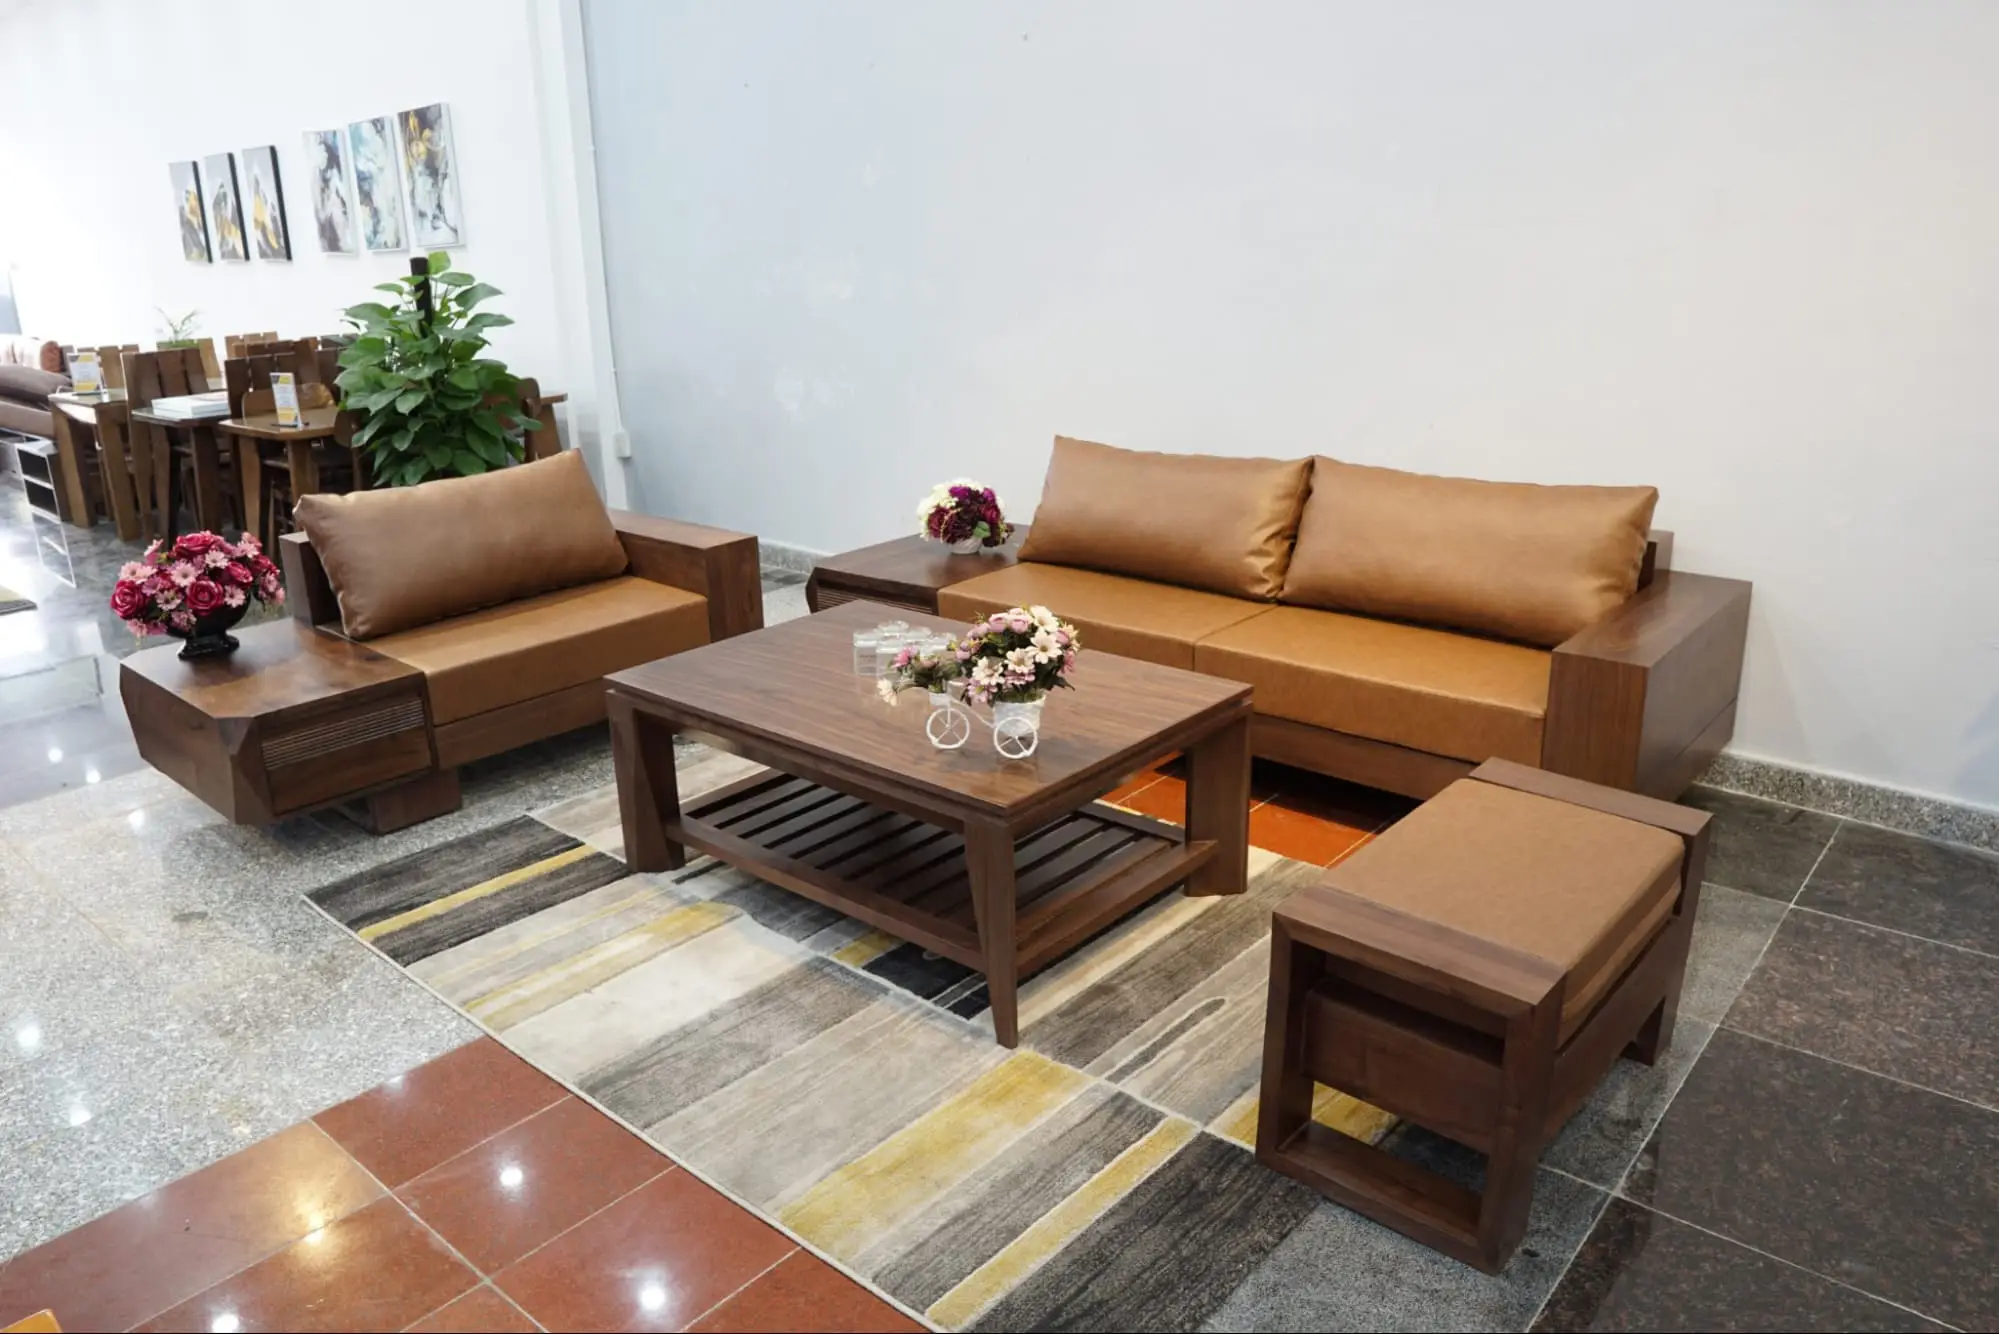 Mẫu bàn ghế phòng khách hiện đại bằng gỗ kết hợp với da